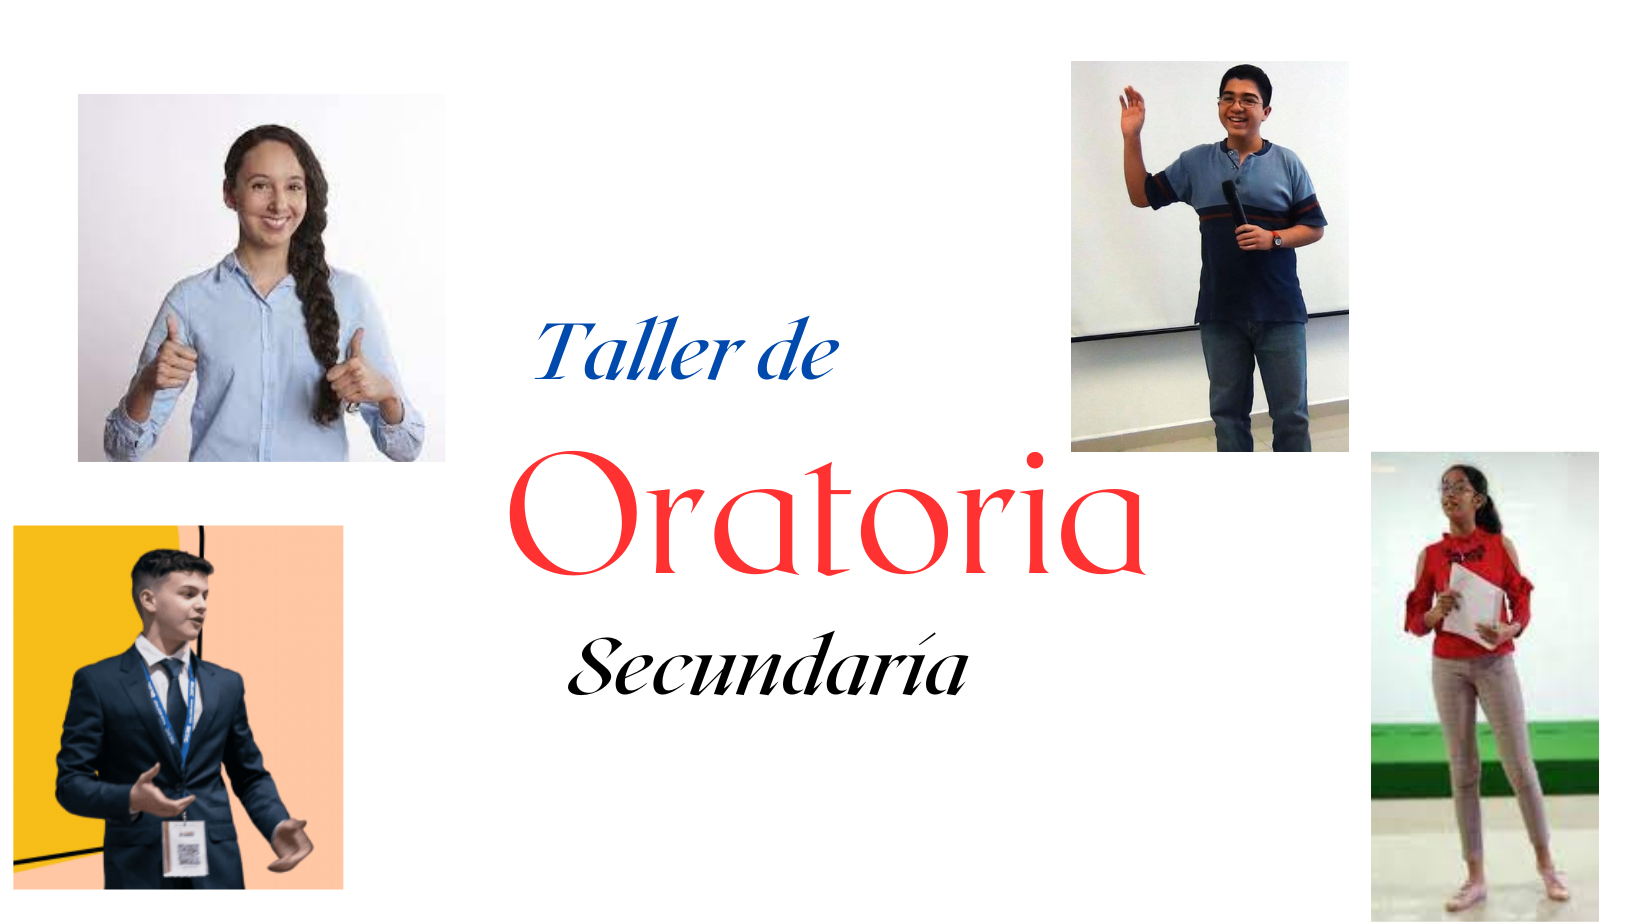 TALLER DE ORATORIA 5 SECUNDARIA